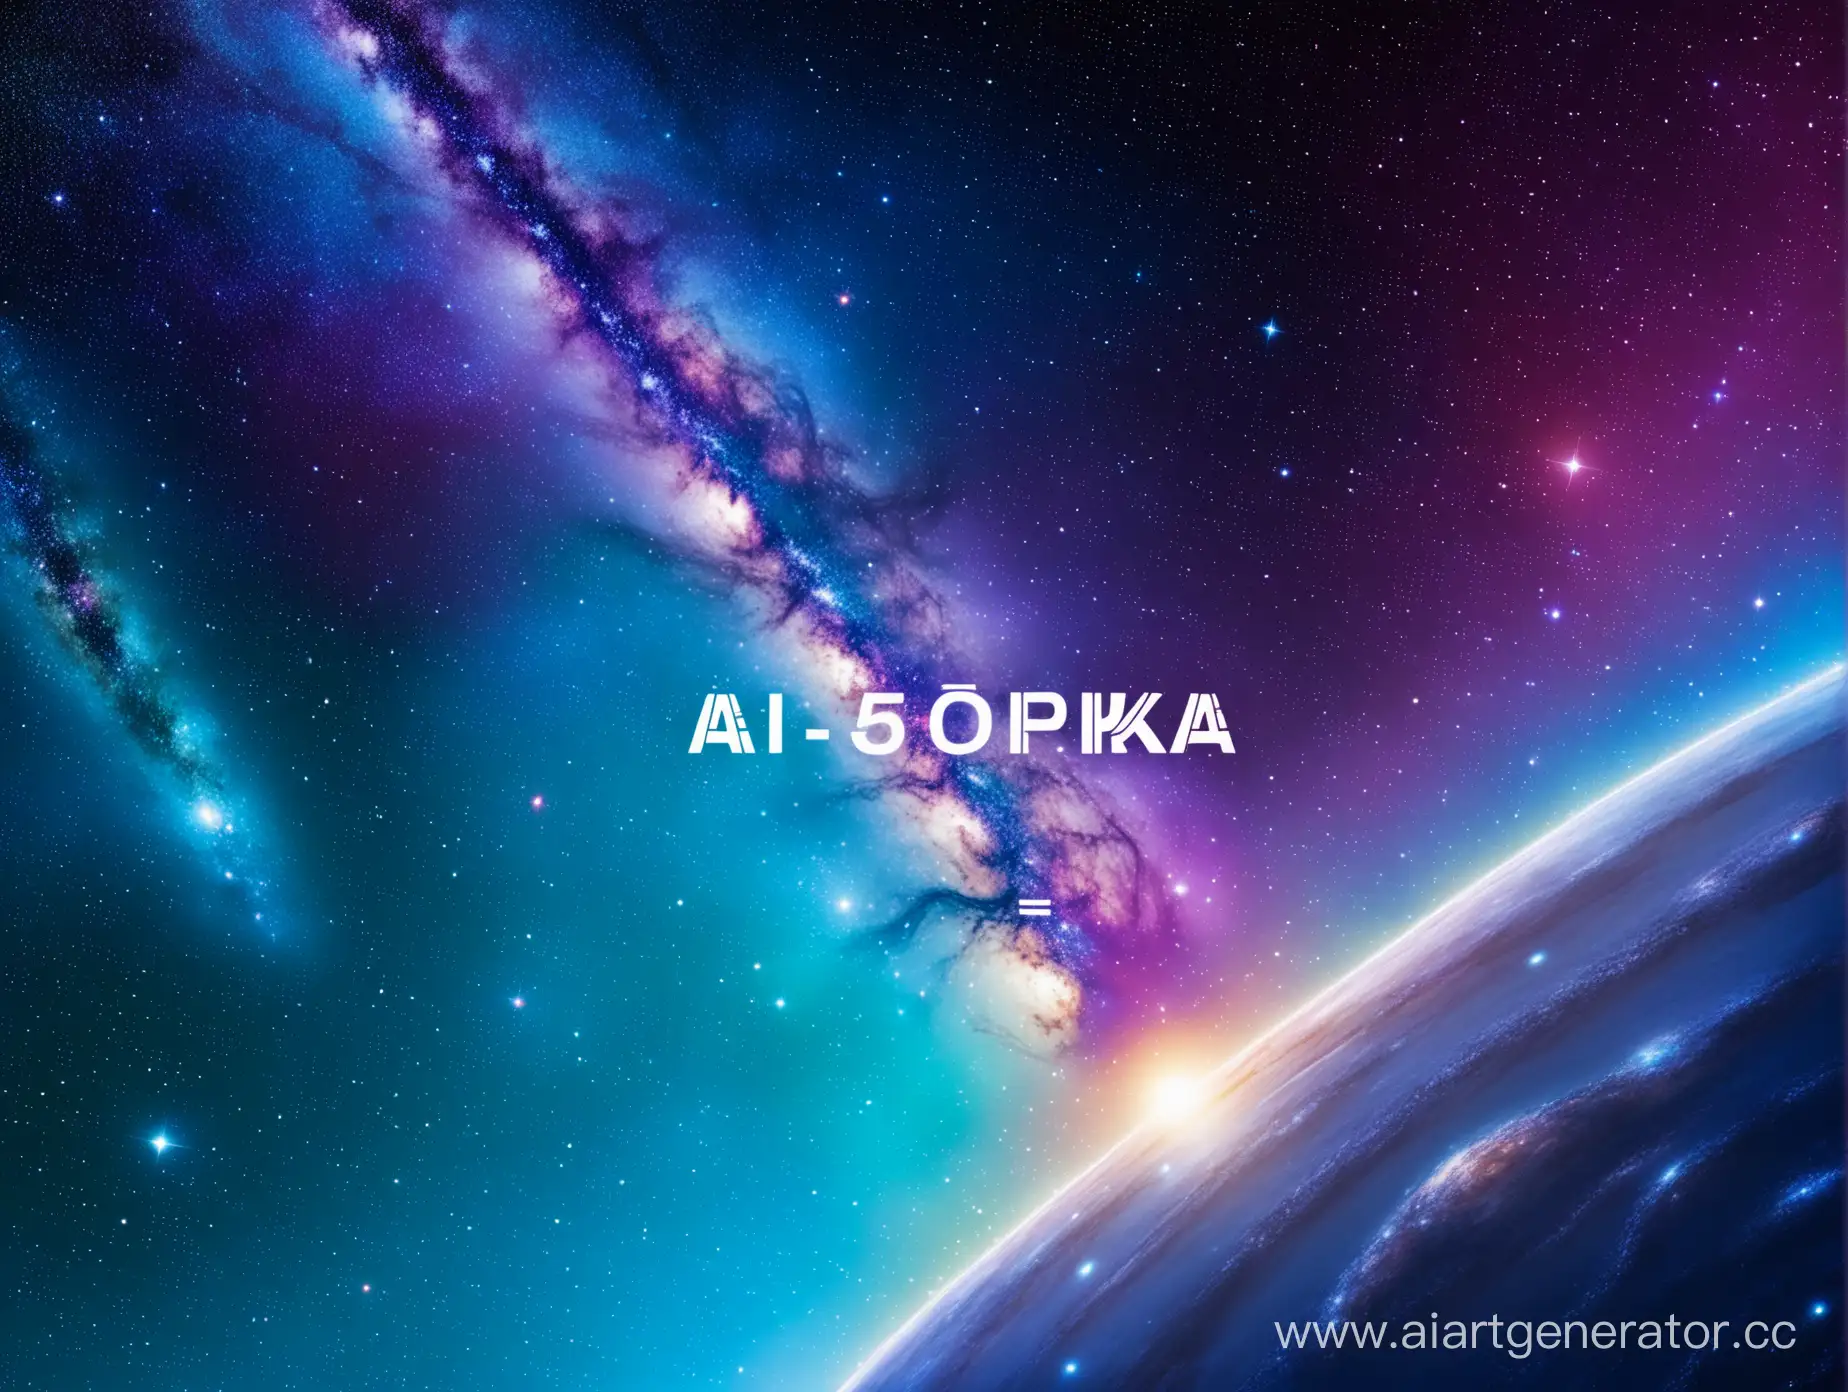 Фон галактики, по середине изображения надпись AI 5OPKA, справа парень с синими волосами